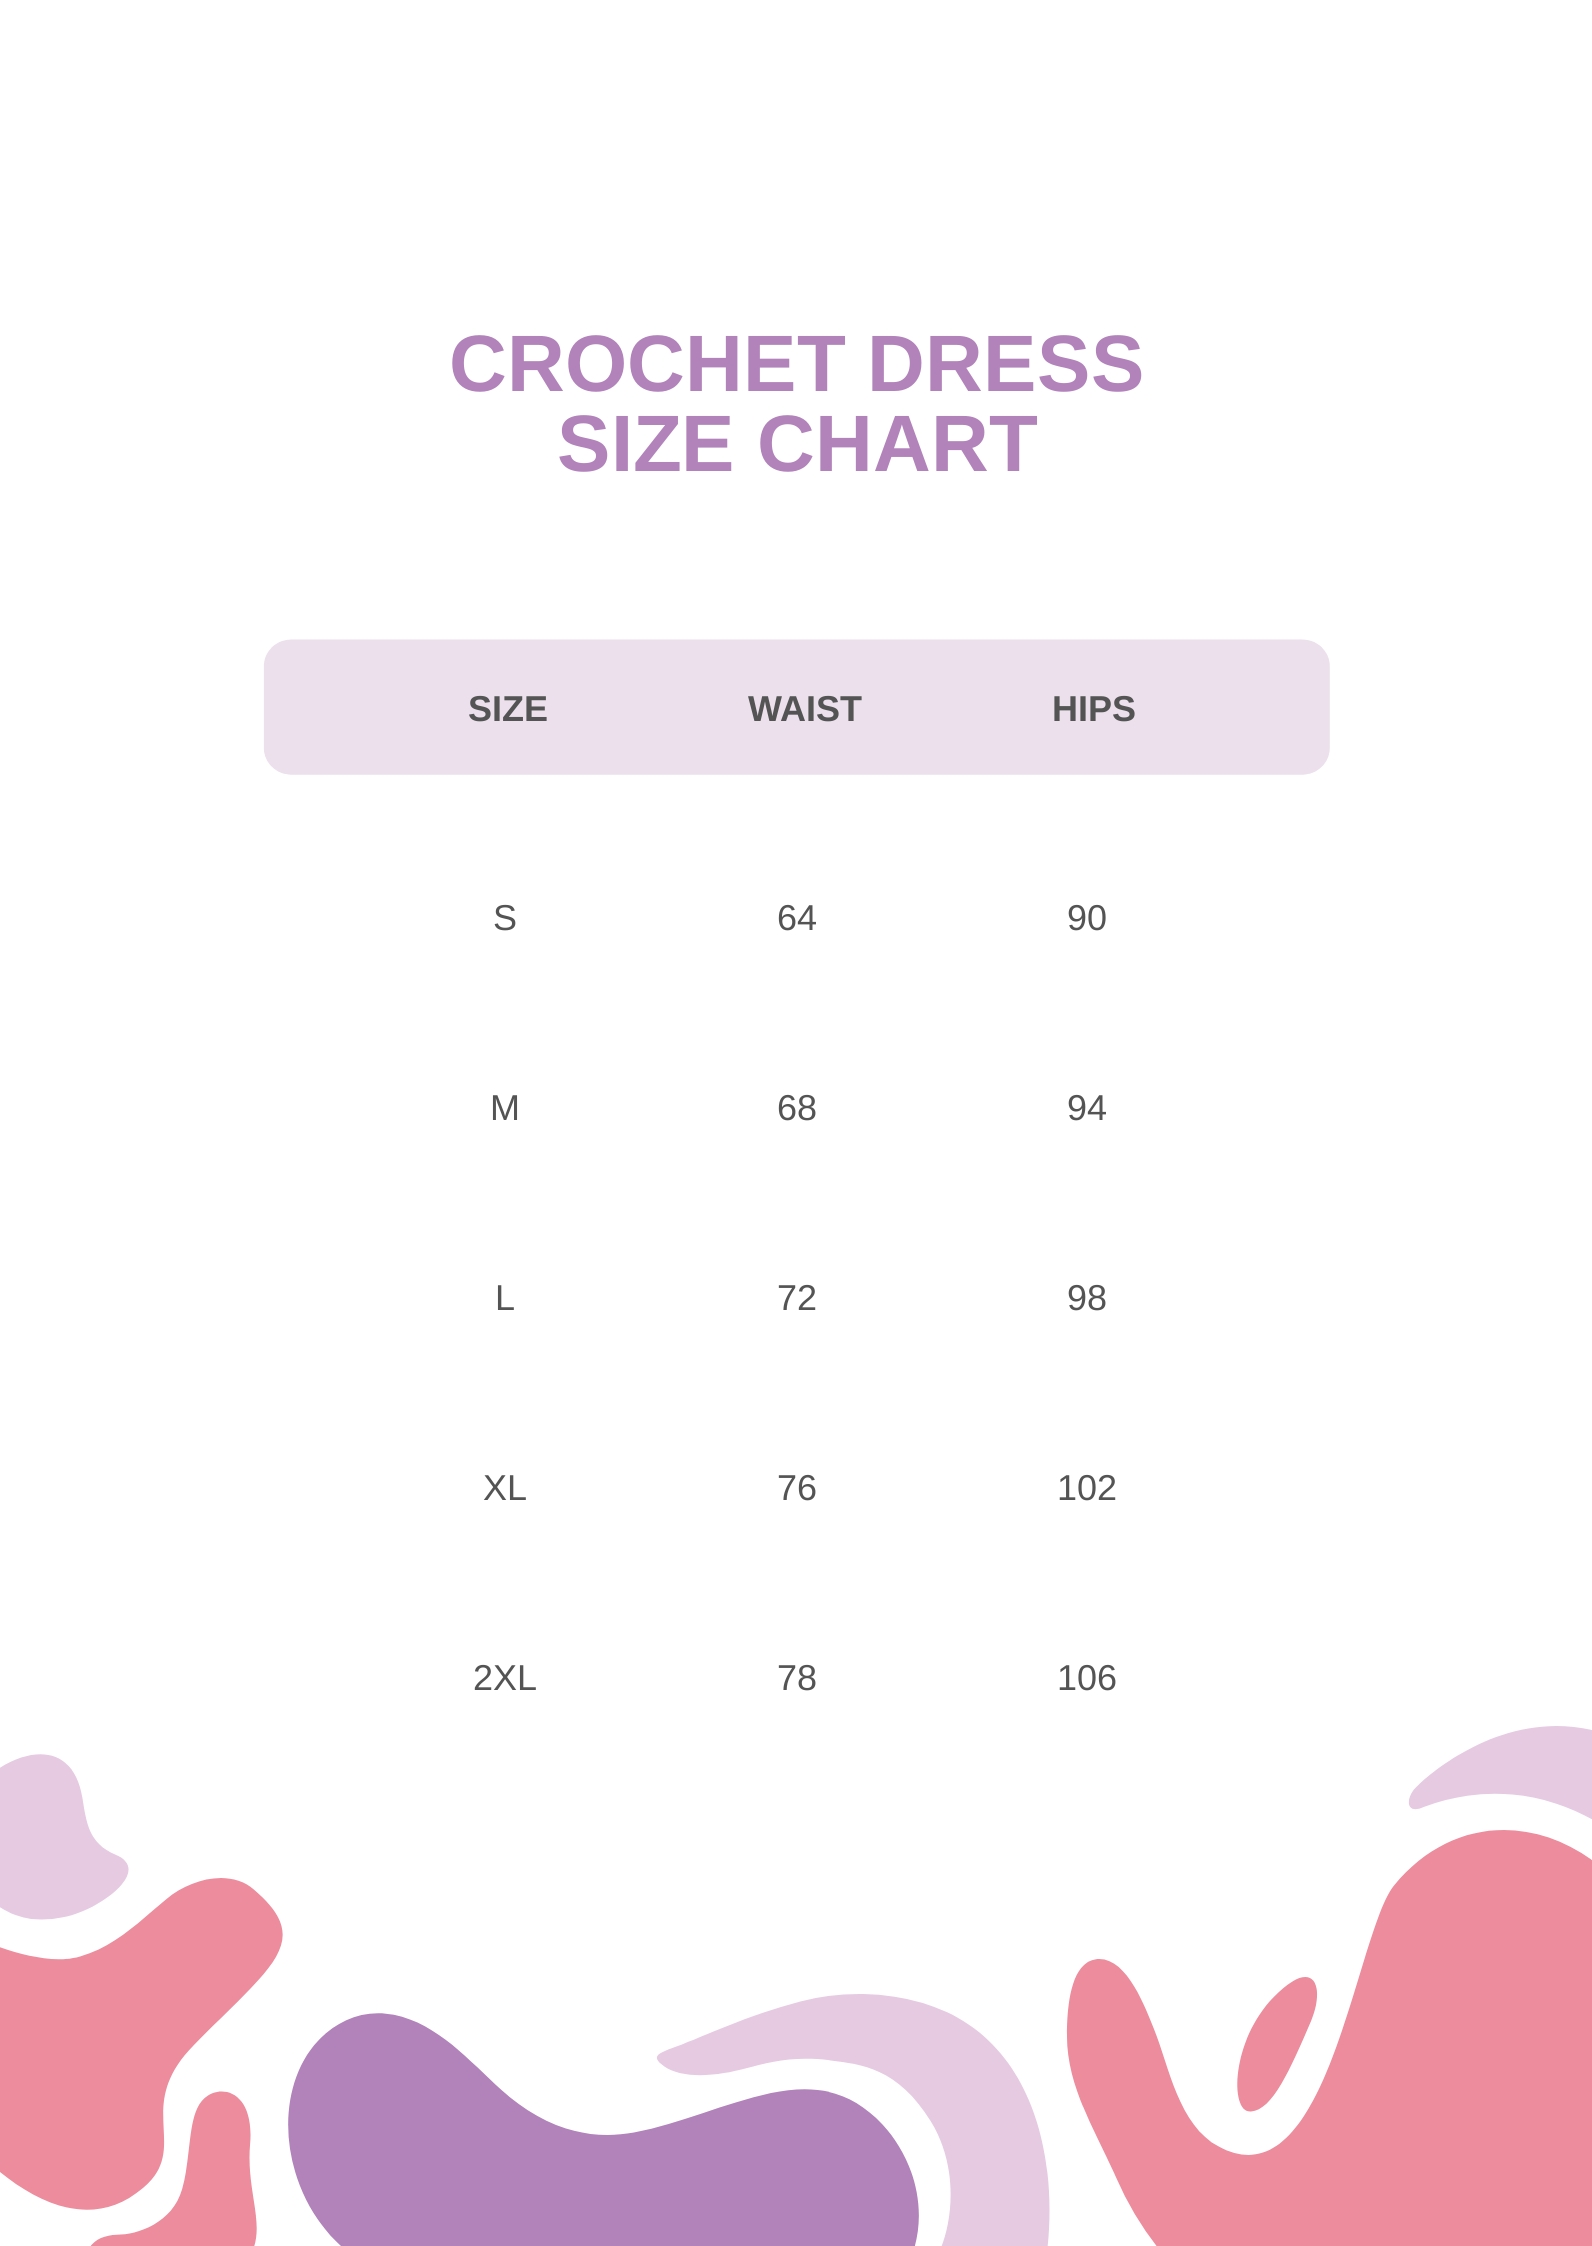 Crochet Dress Size Chart in PDF